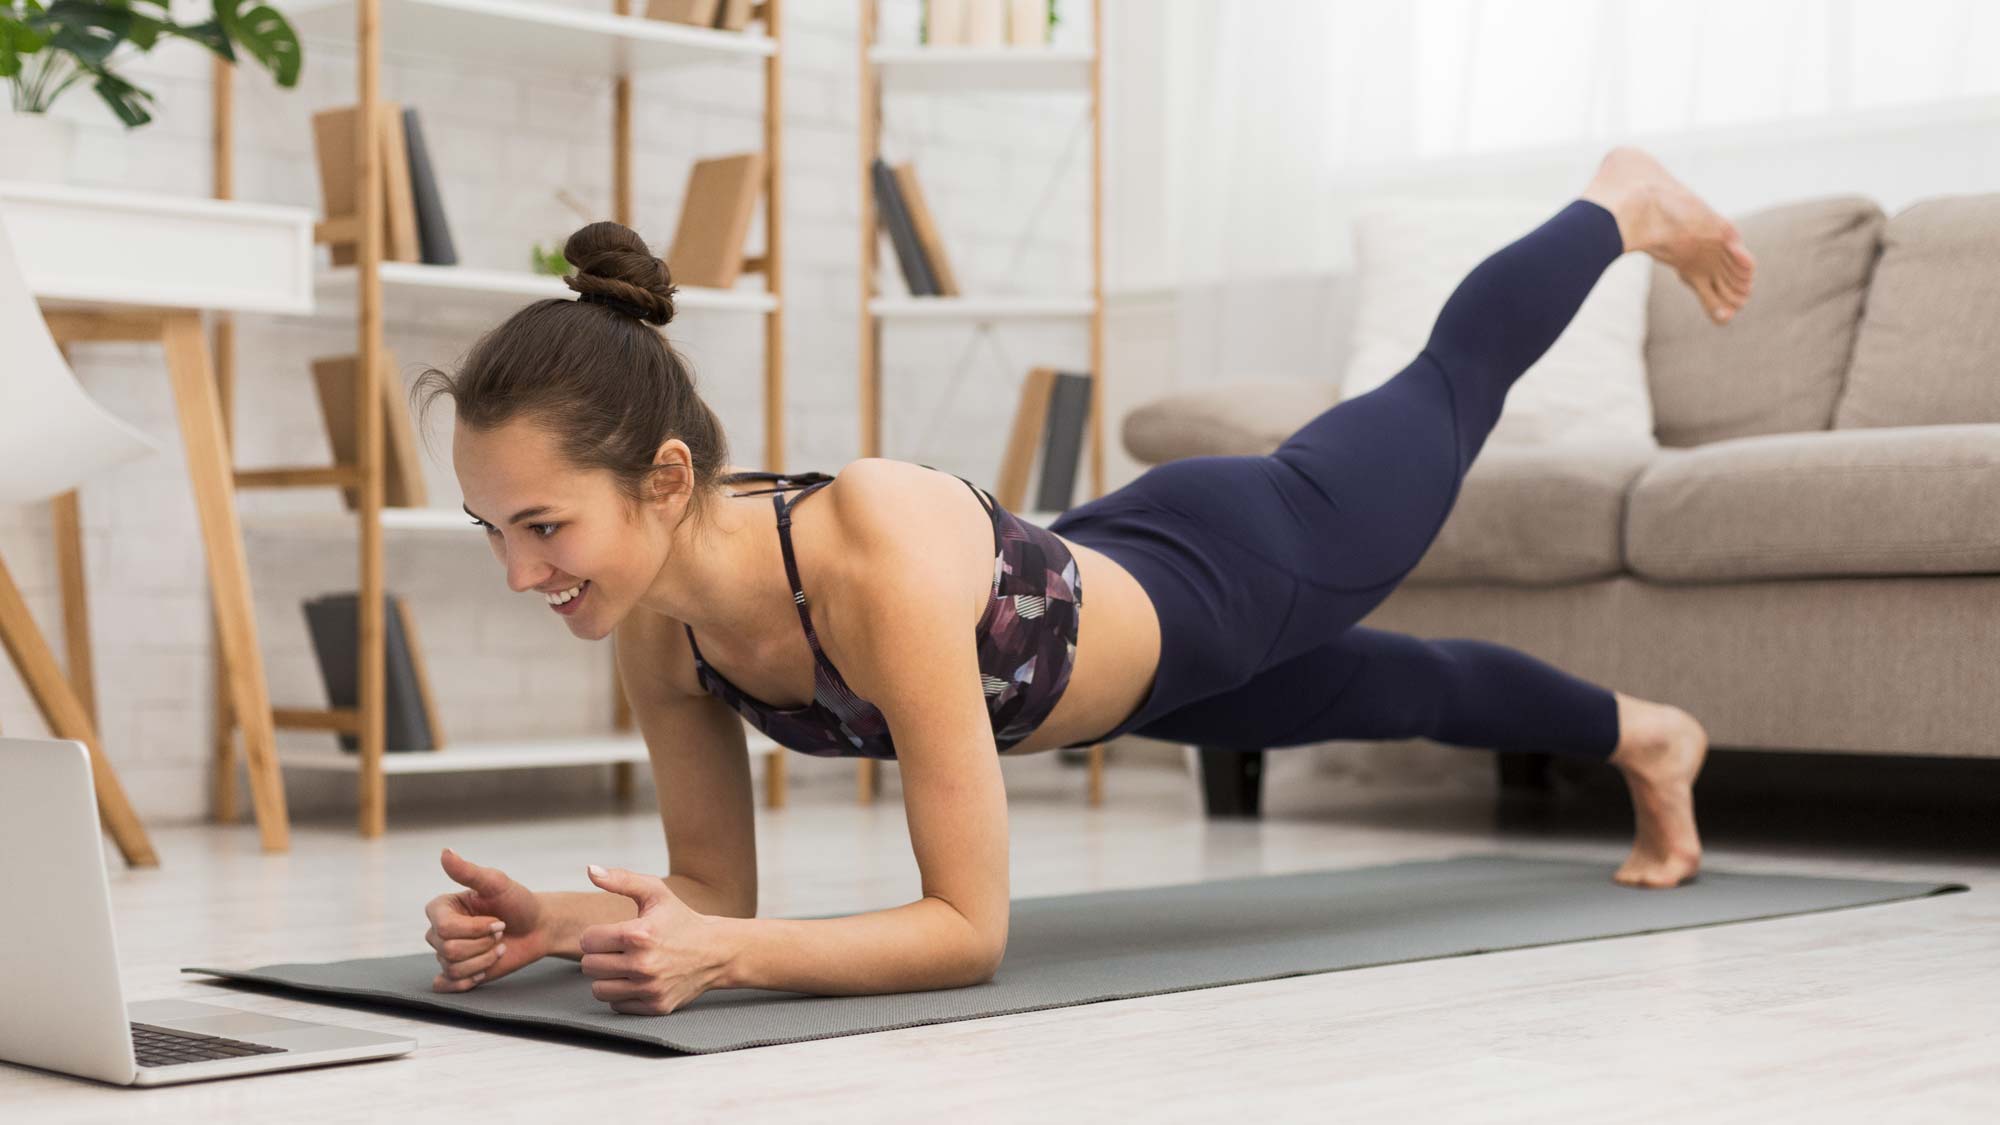 yoga mat exercises for beginners